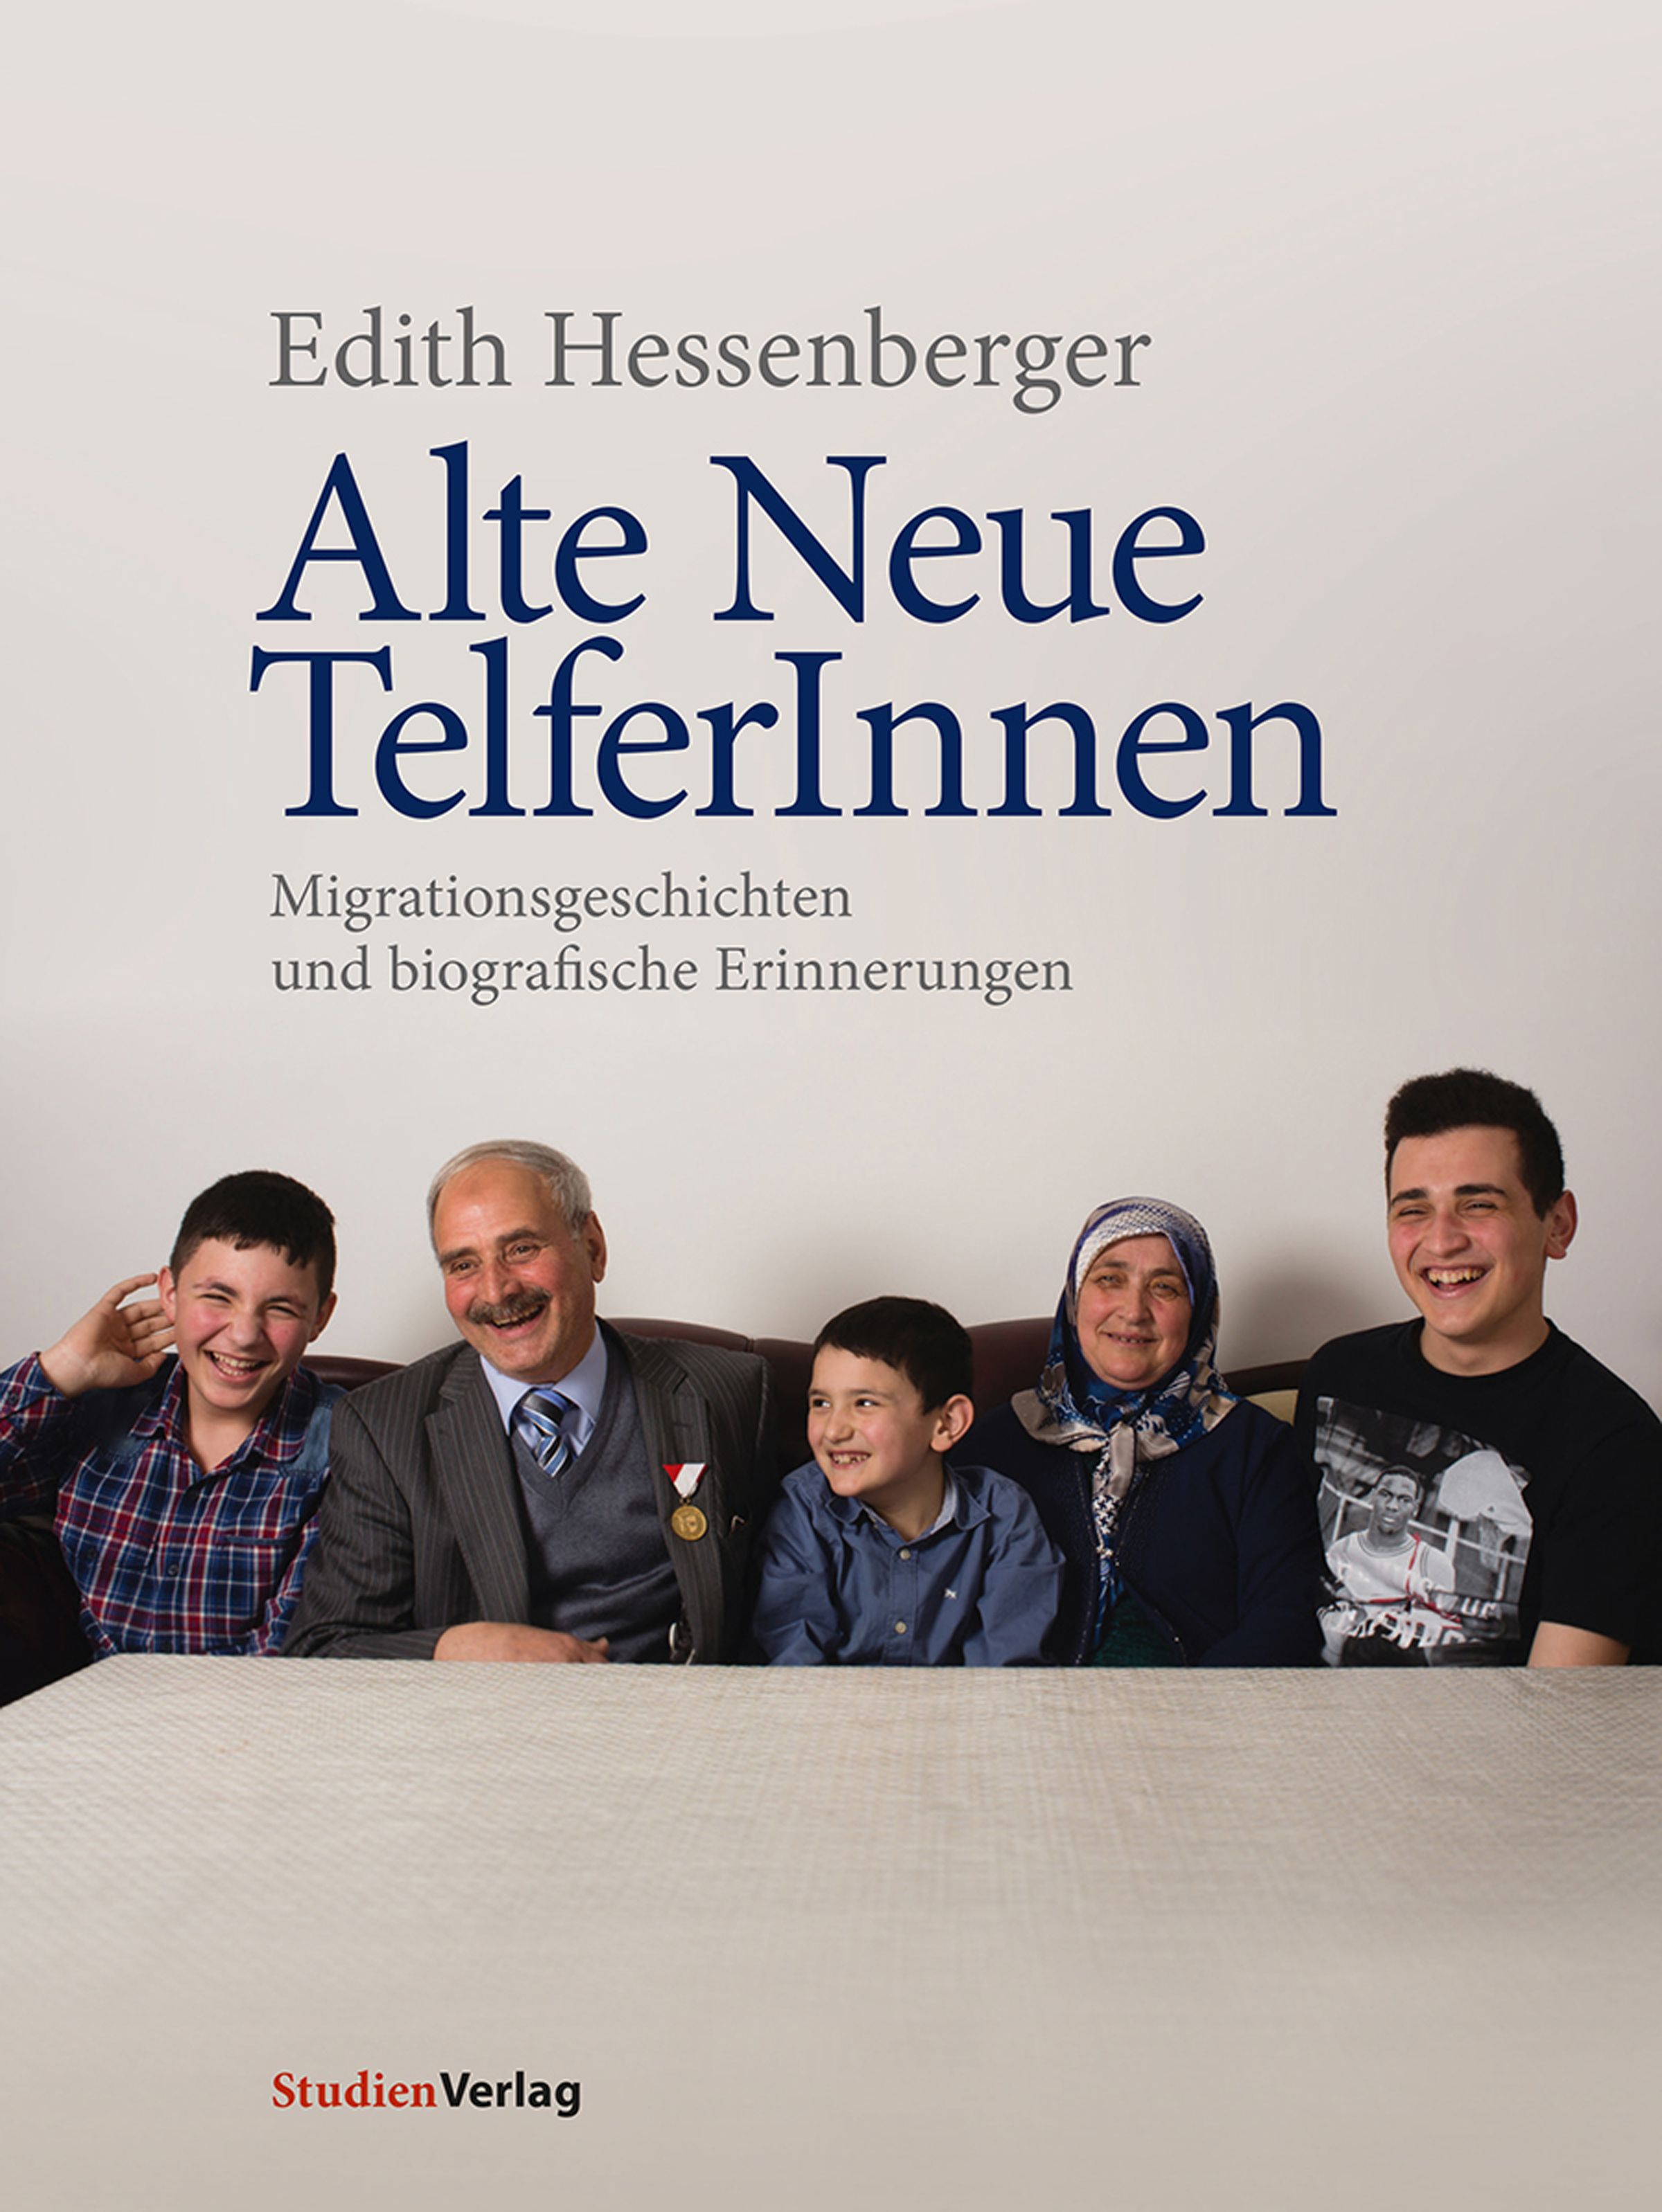 Edith Hessenberger Alte Neue TelferInnen